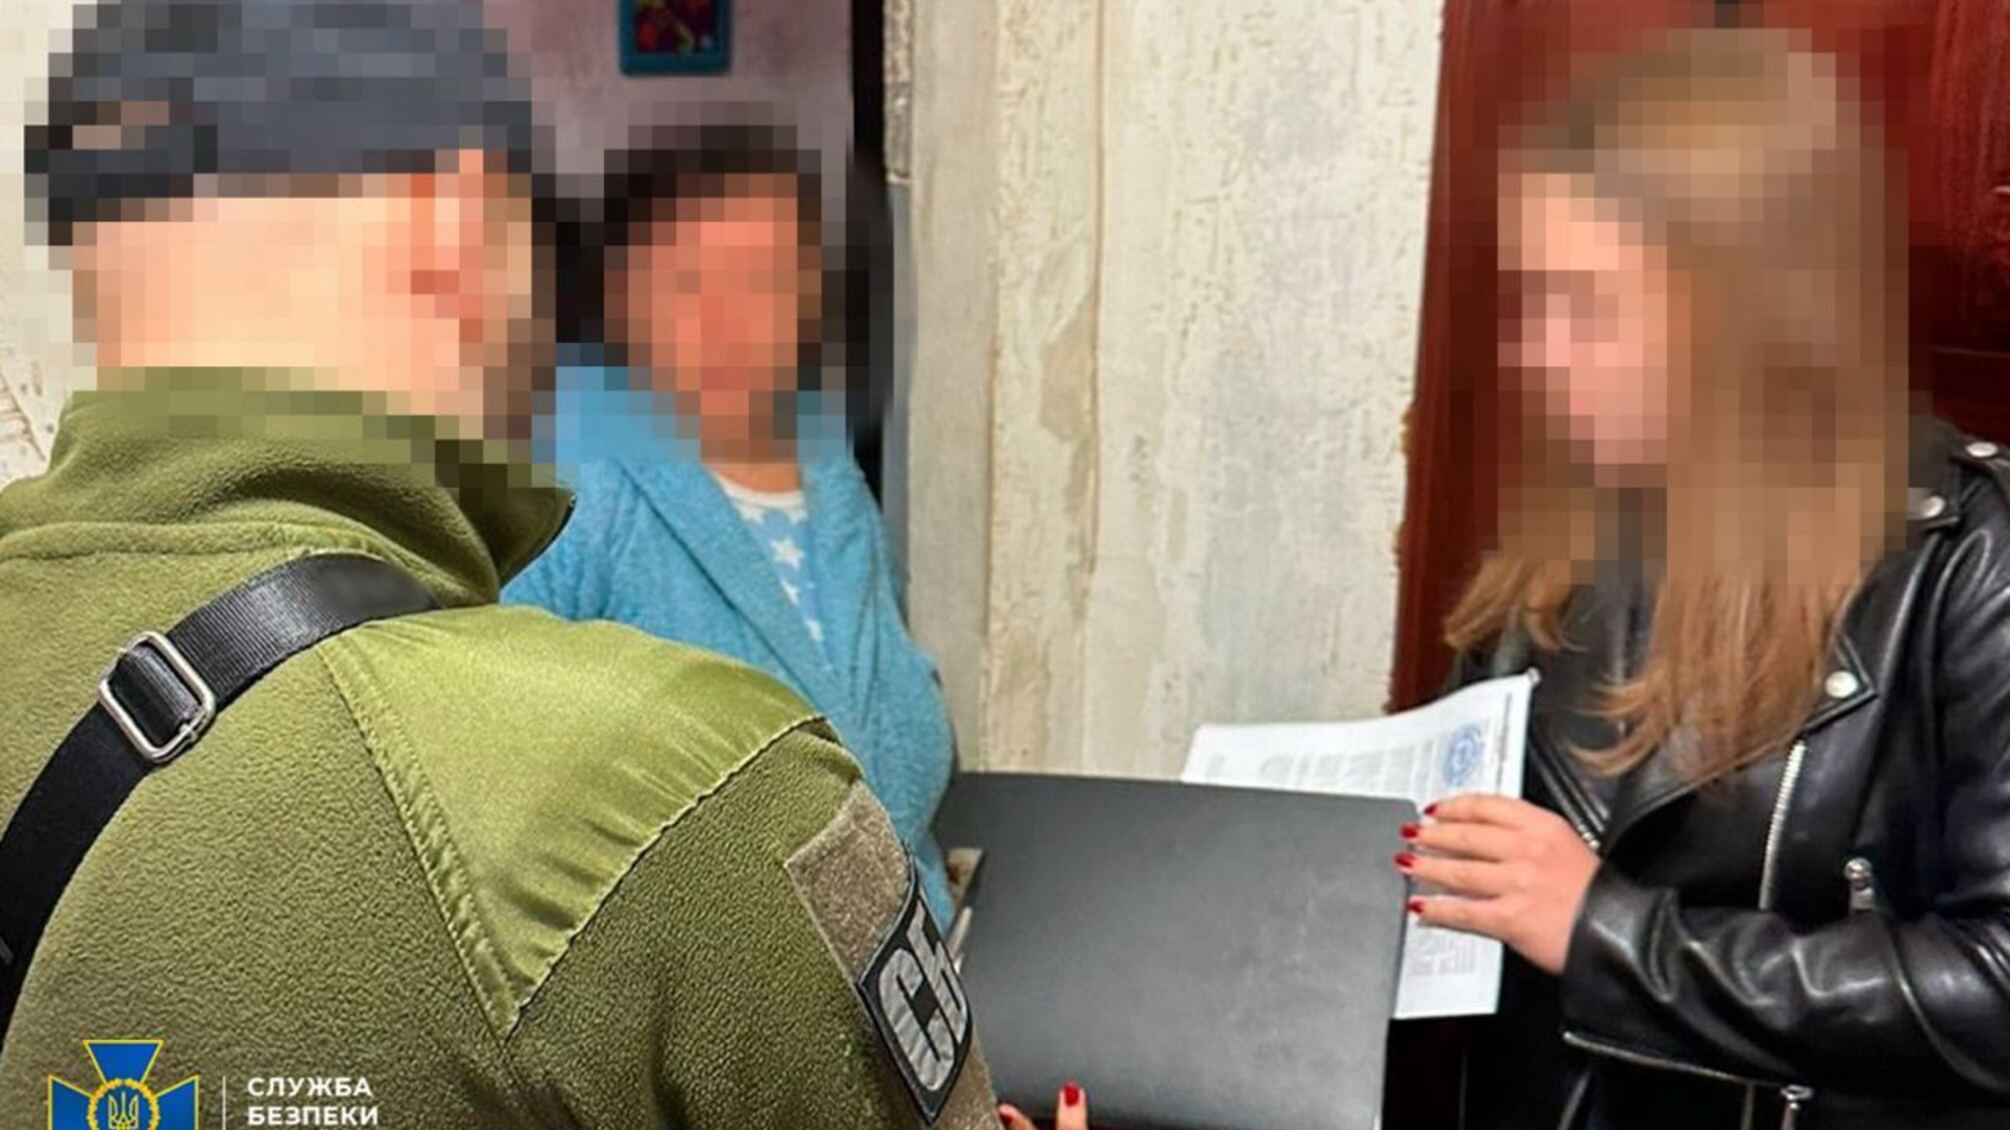 СБУ разрушила мечту сторонника 'русского мира' получить паспорт от путина